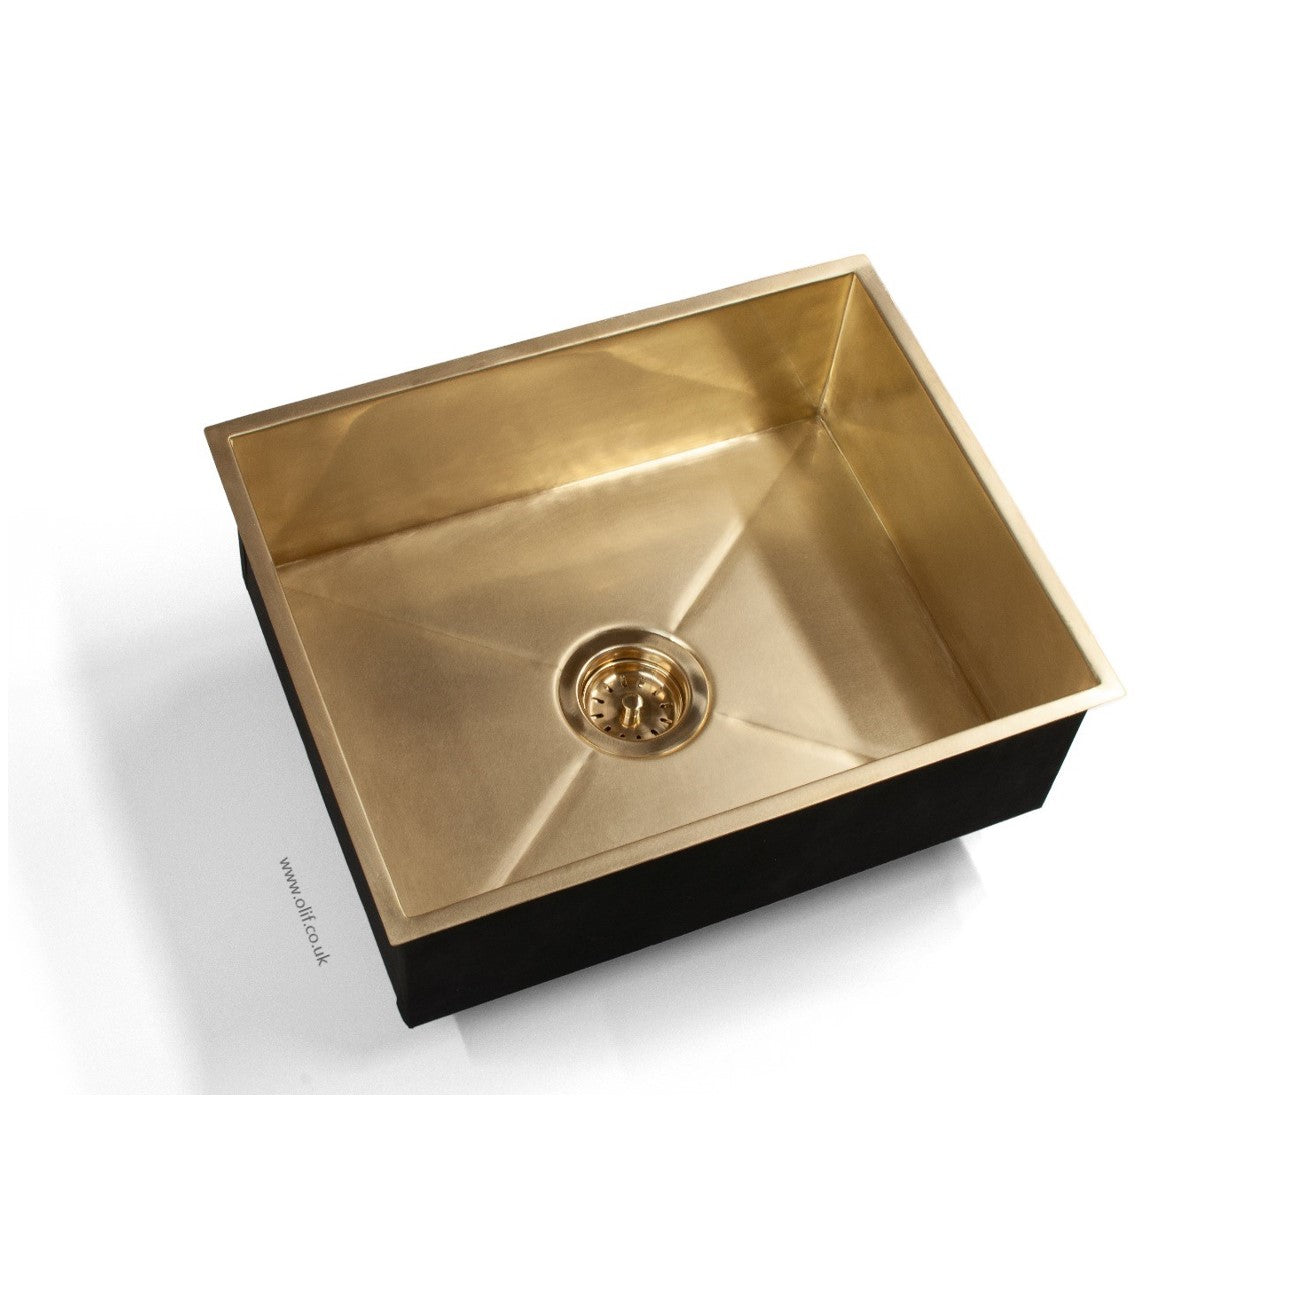 Solid Brass 500/400 kitchen sink, undermount or topmount